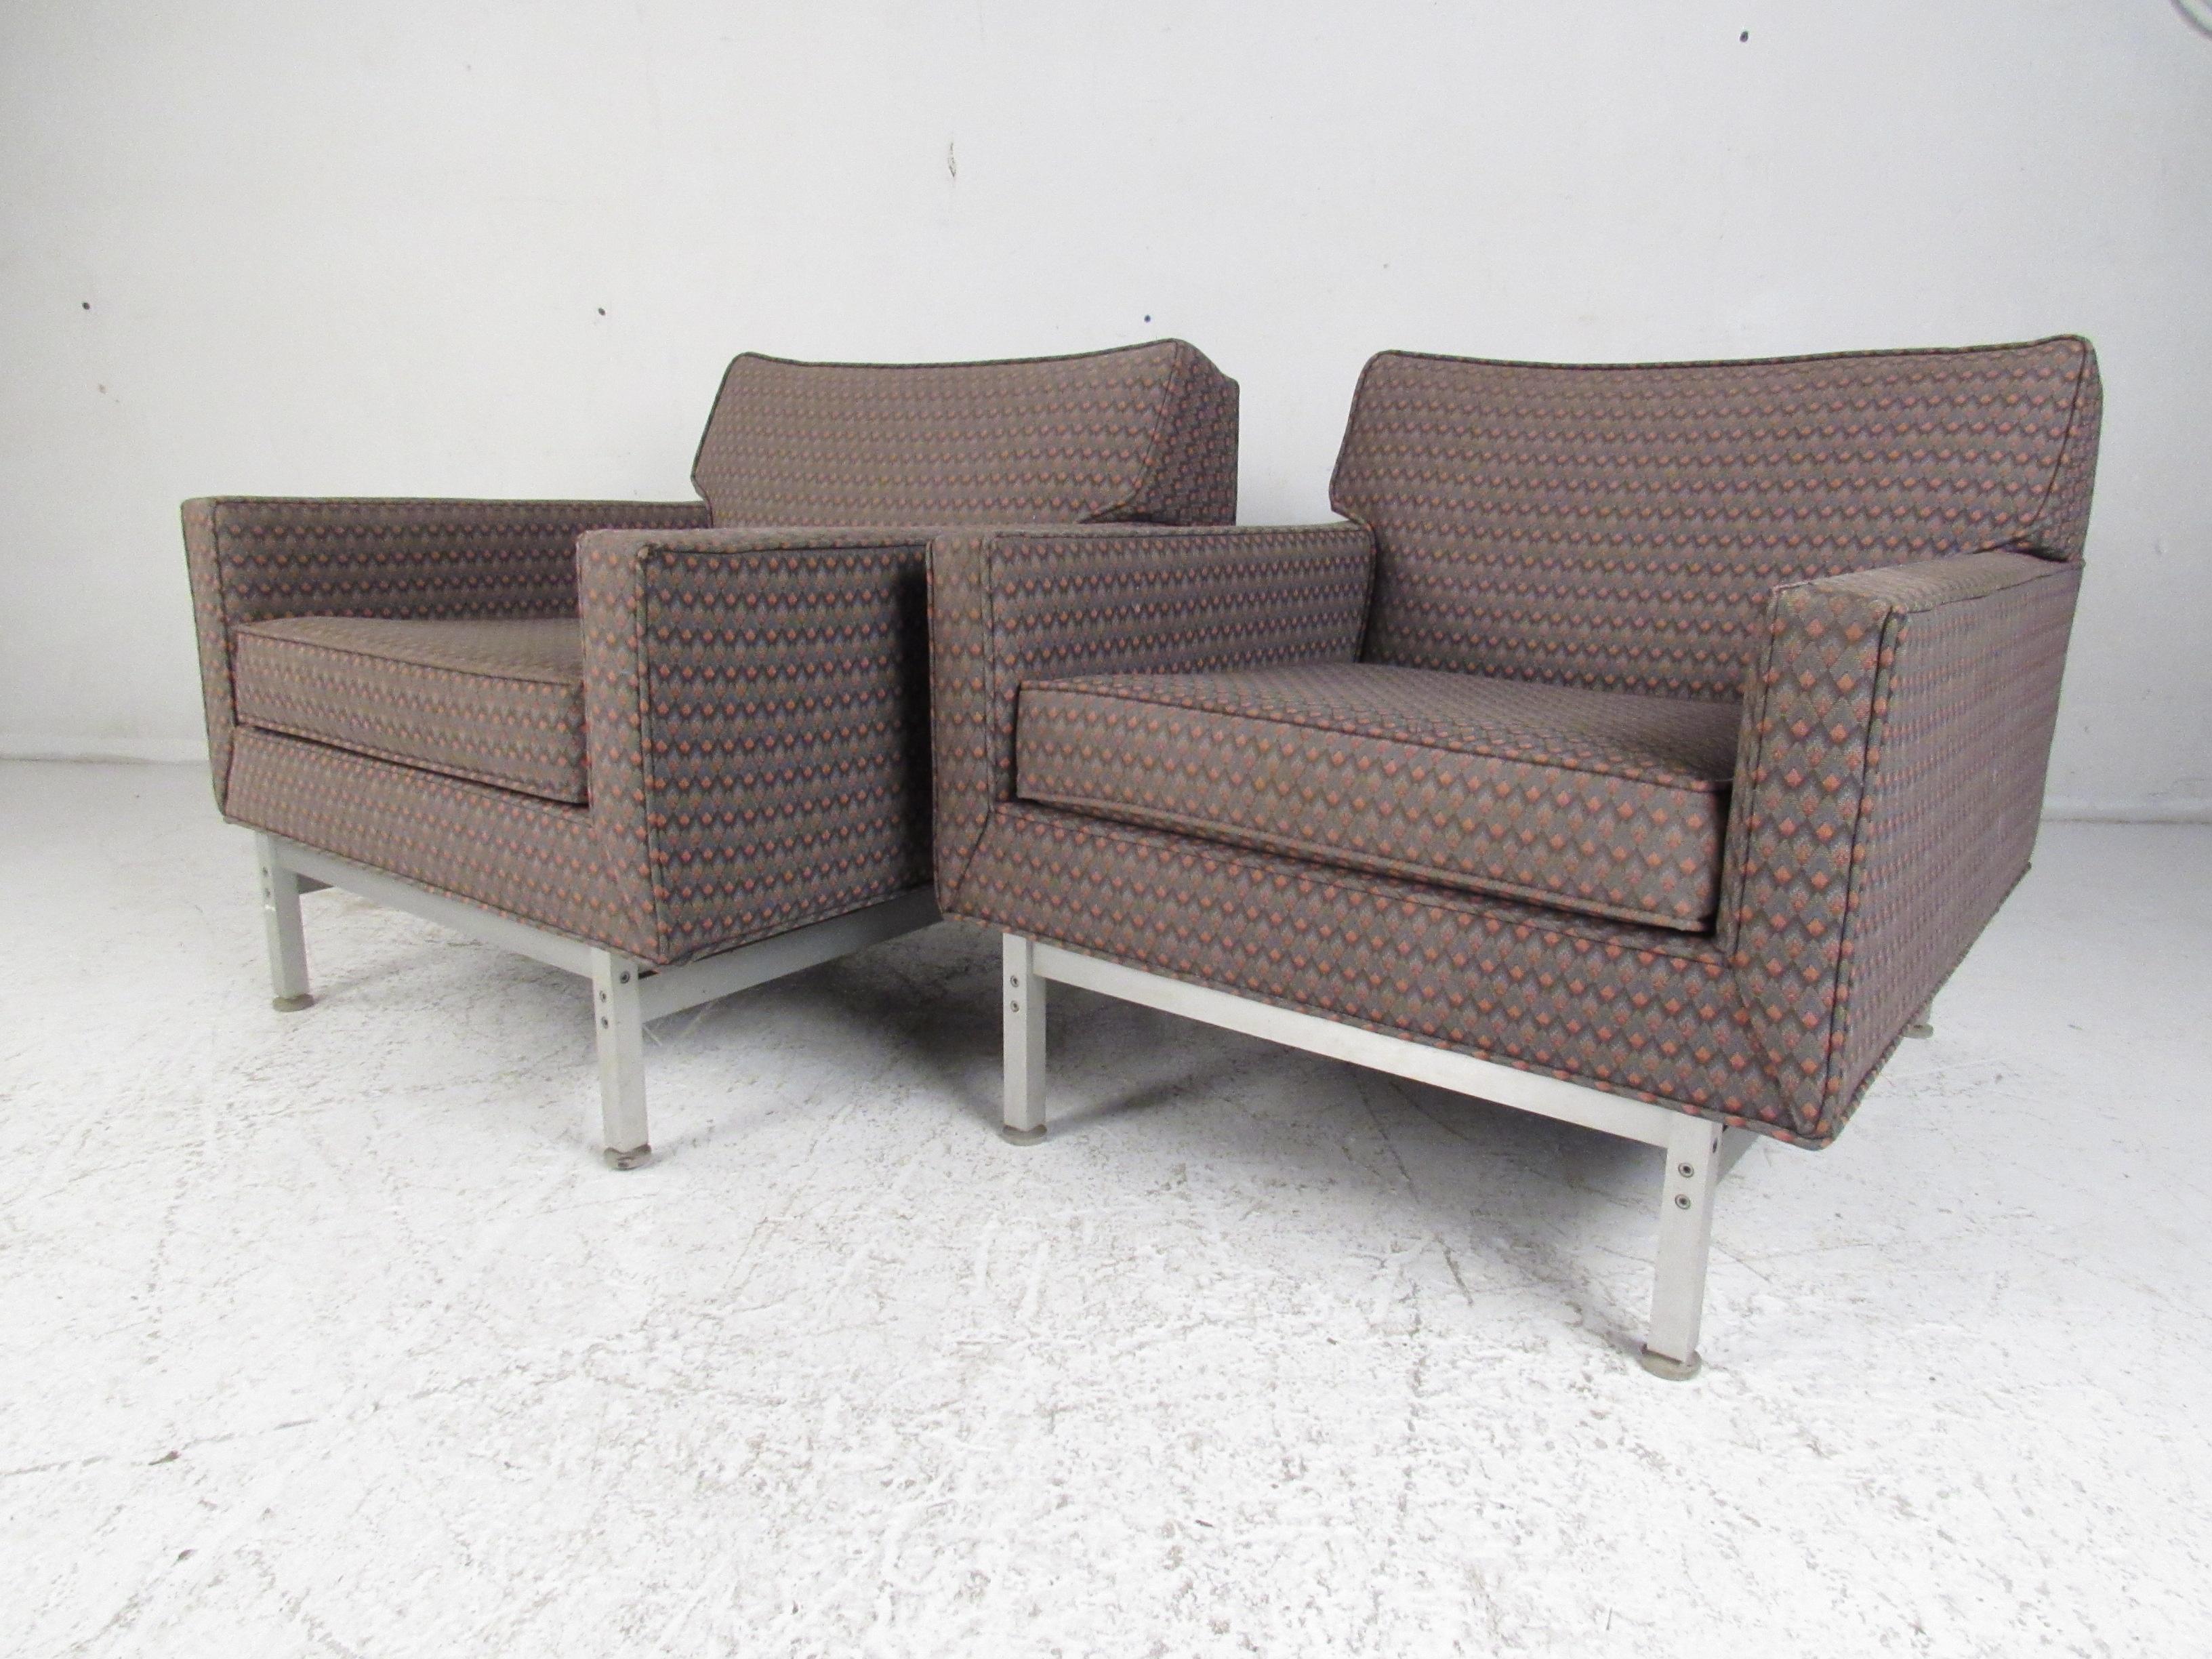 Dieses stilvolle Paar moderner Vintage-Stühle von Knoll International ist der perfekte Blickfang für jede moderne Einrichtung. Ein äußerst komfortables Design mit niedrigen Armlehnen und einem gepolsterten, abnehmbaren Kissen. Dieses niedrig